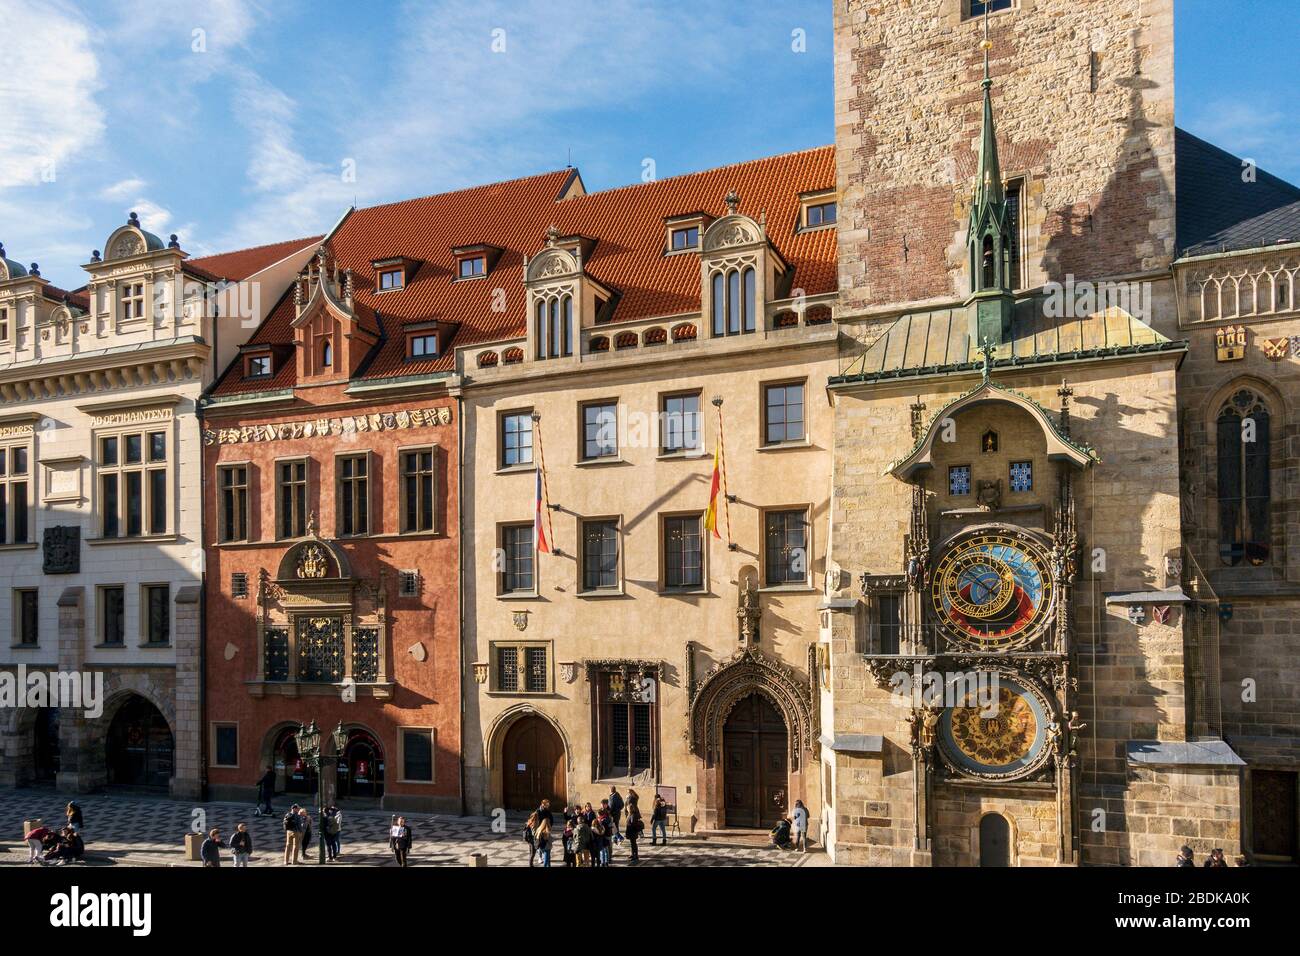 Ancienne Hôtel de Ville et horloge astronomique, site classé au patrimoine mondial de l'UNESCO, Prague, République tchèque Banque D'Images